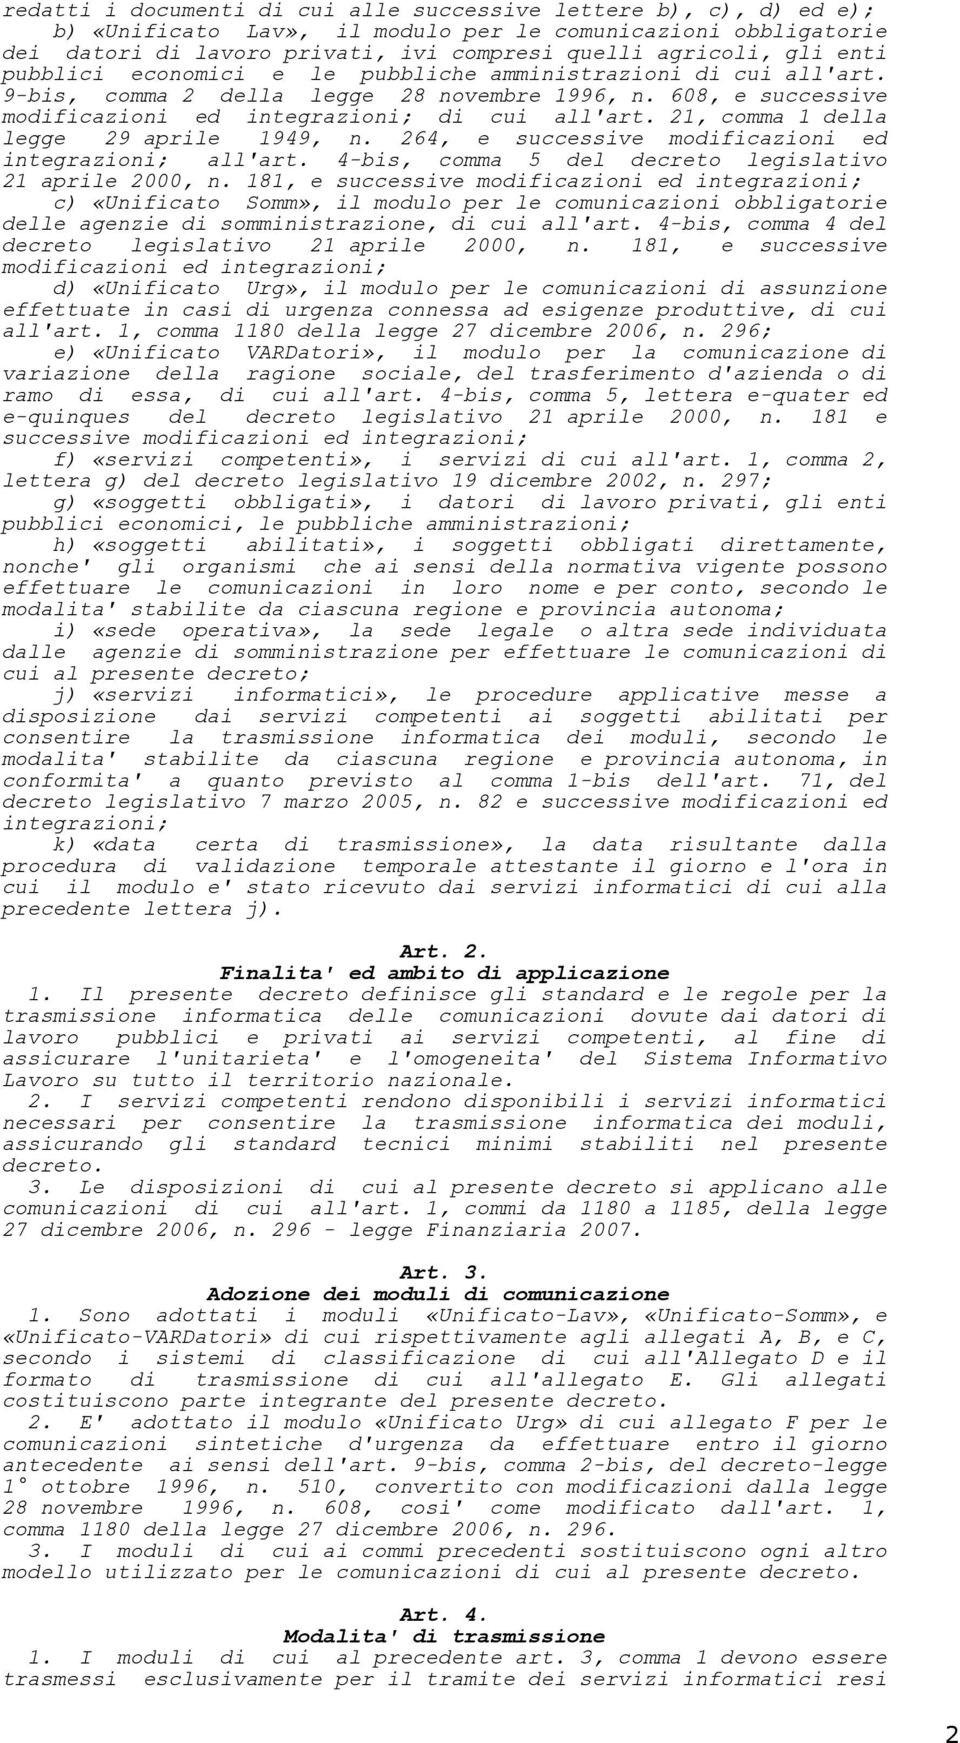 21, comma 1 della legge 29 aprile 1949, n. 264, e successive modificazioni ed integrazioni; all'art. 4-bis, comma 5 del decreto legislativo 21 aprile 2000, n.